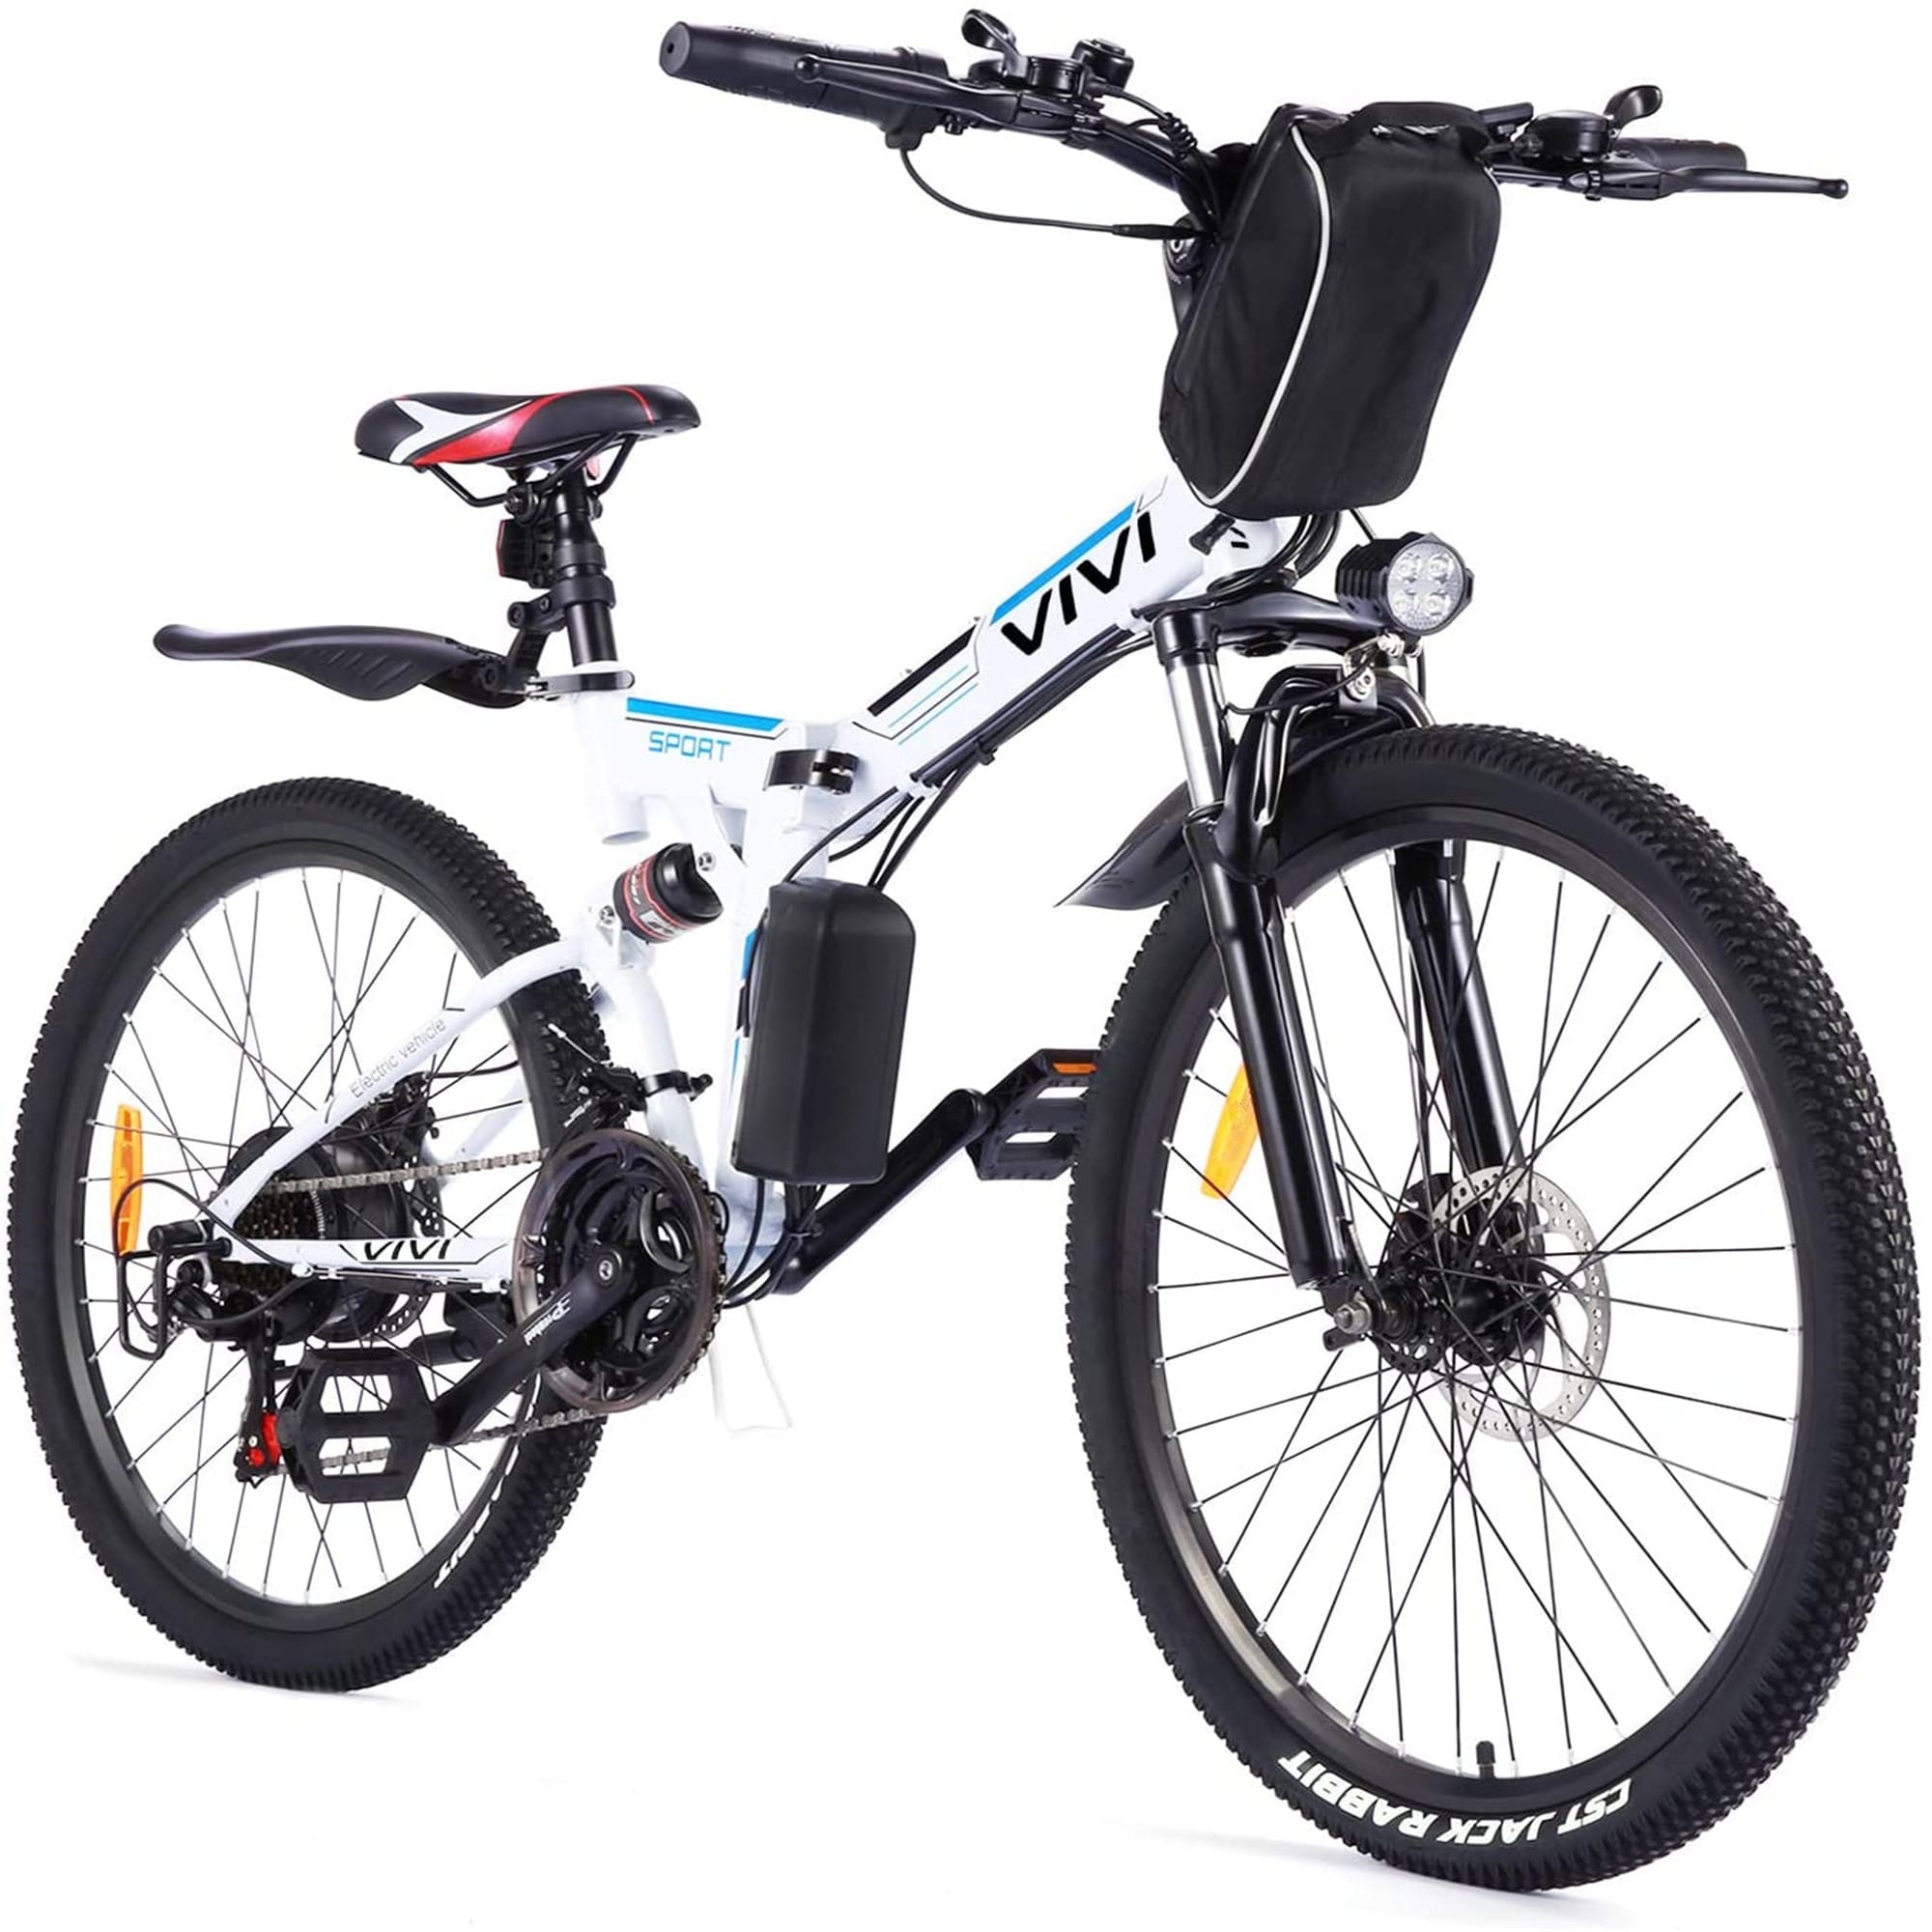 350W Motor Electric Bike 26 inch Folding Adjustable E-Bike Mountain Bike Pedelec Pedelec 